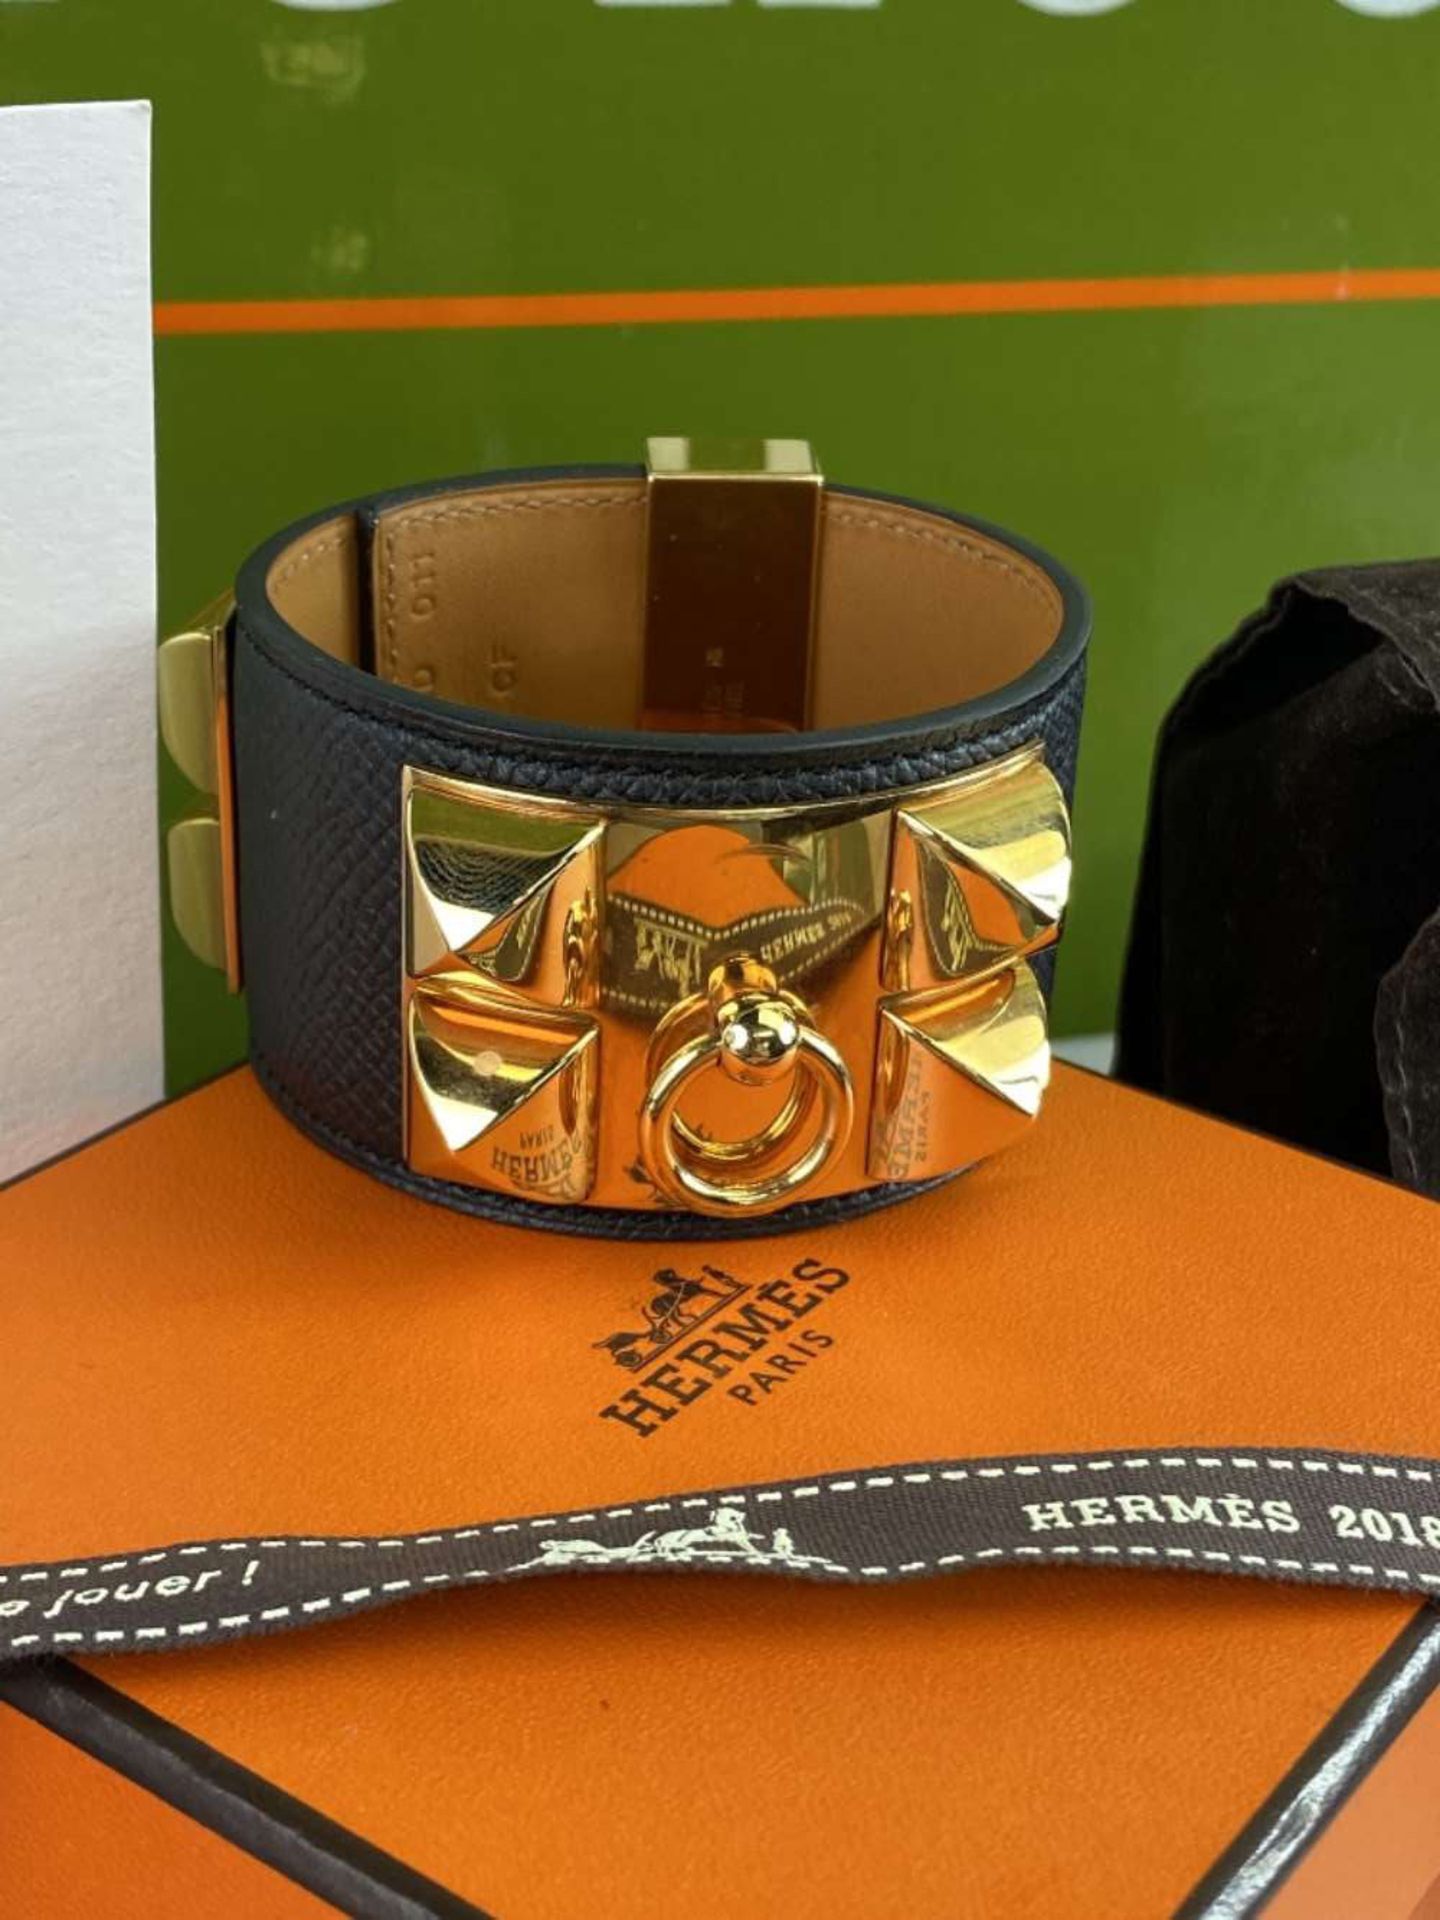 Hermes Paris Collier de Chien Bracelet Inc Receipt £1000 - Image 2 of 6